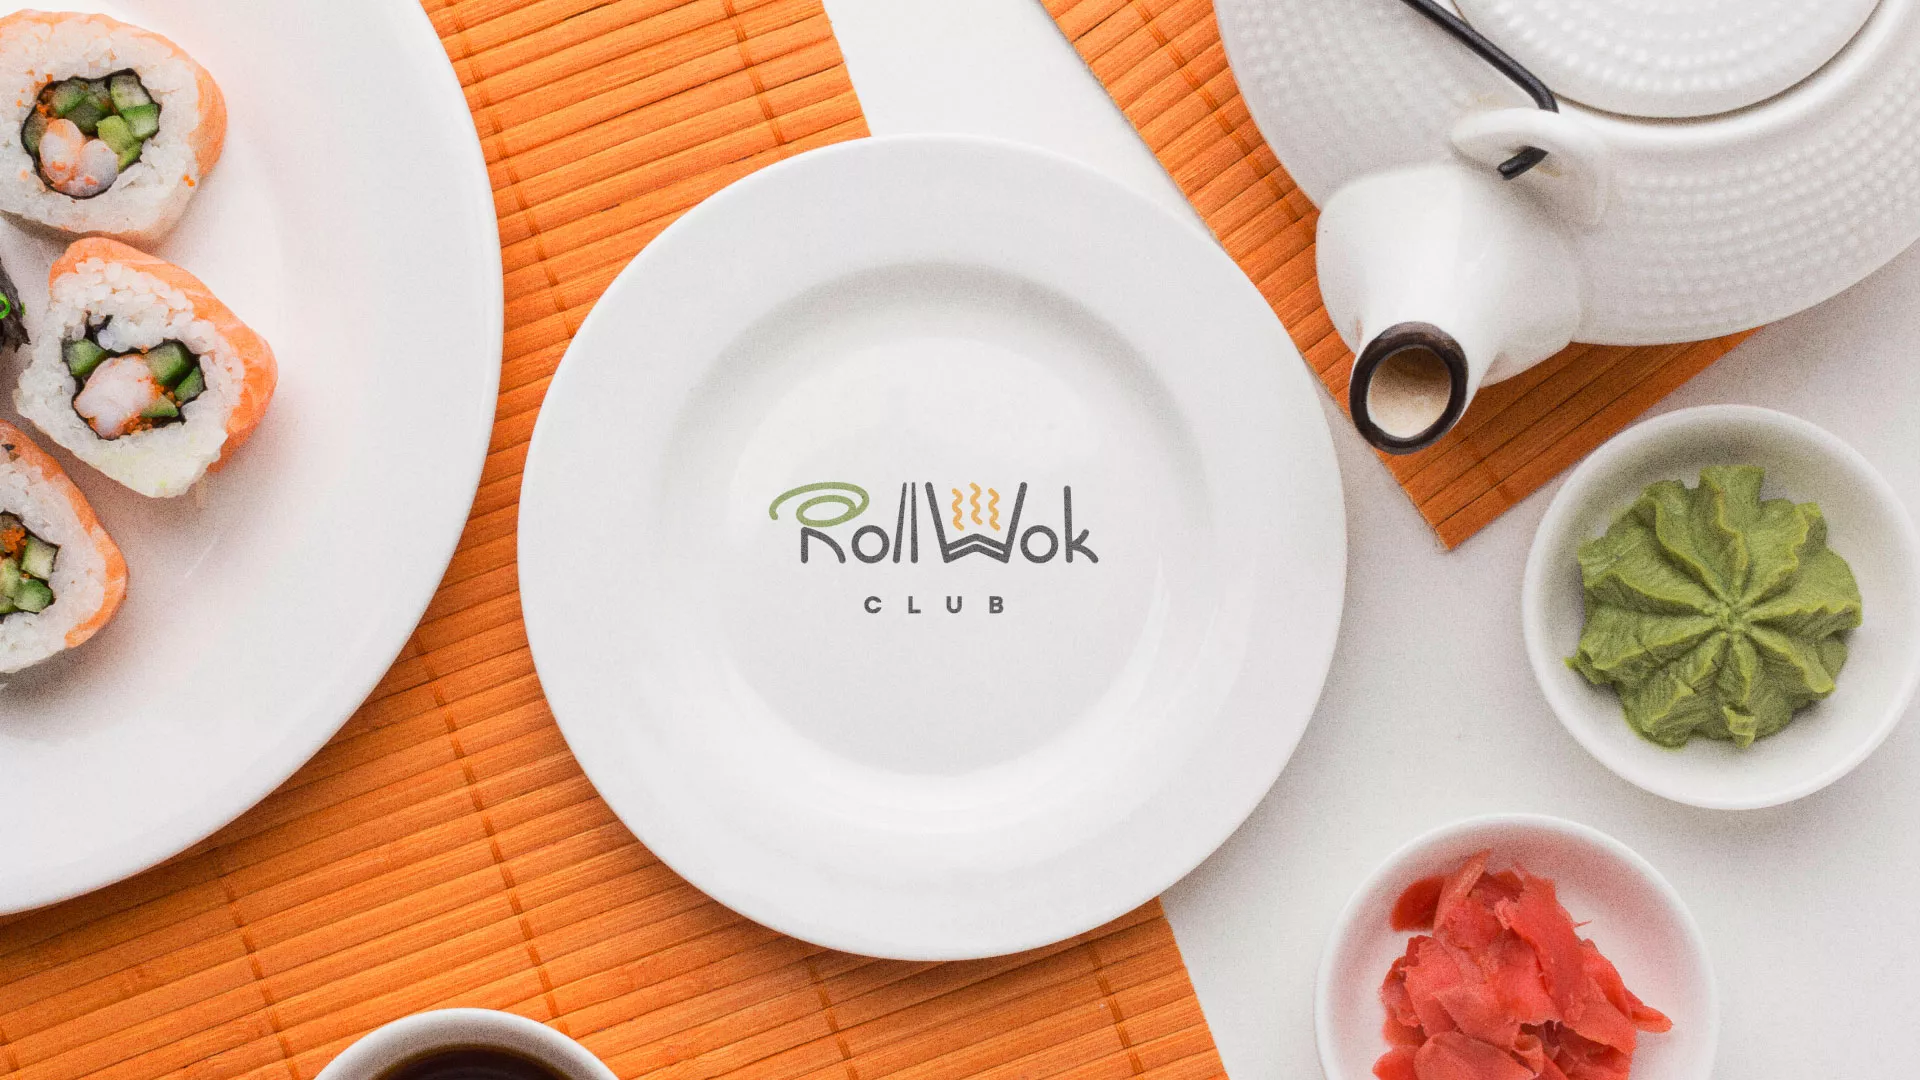 Разработка логотипа и фирменного стиля суши-бара «Roll Wok Club» в Старом Осколе